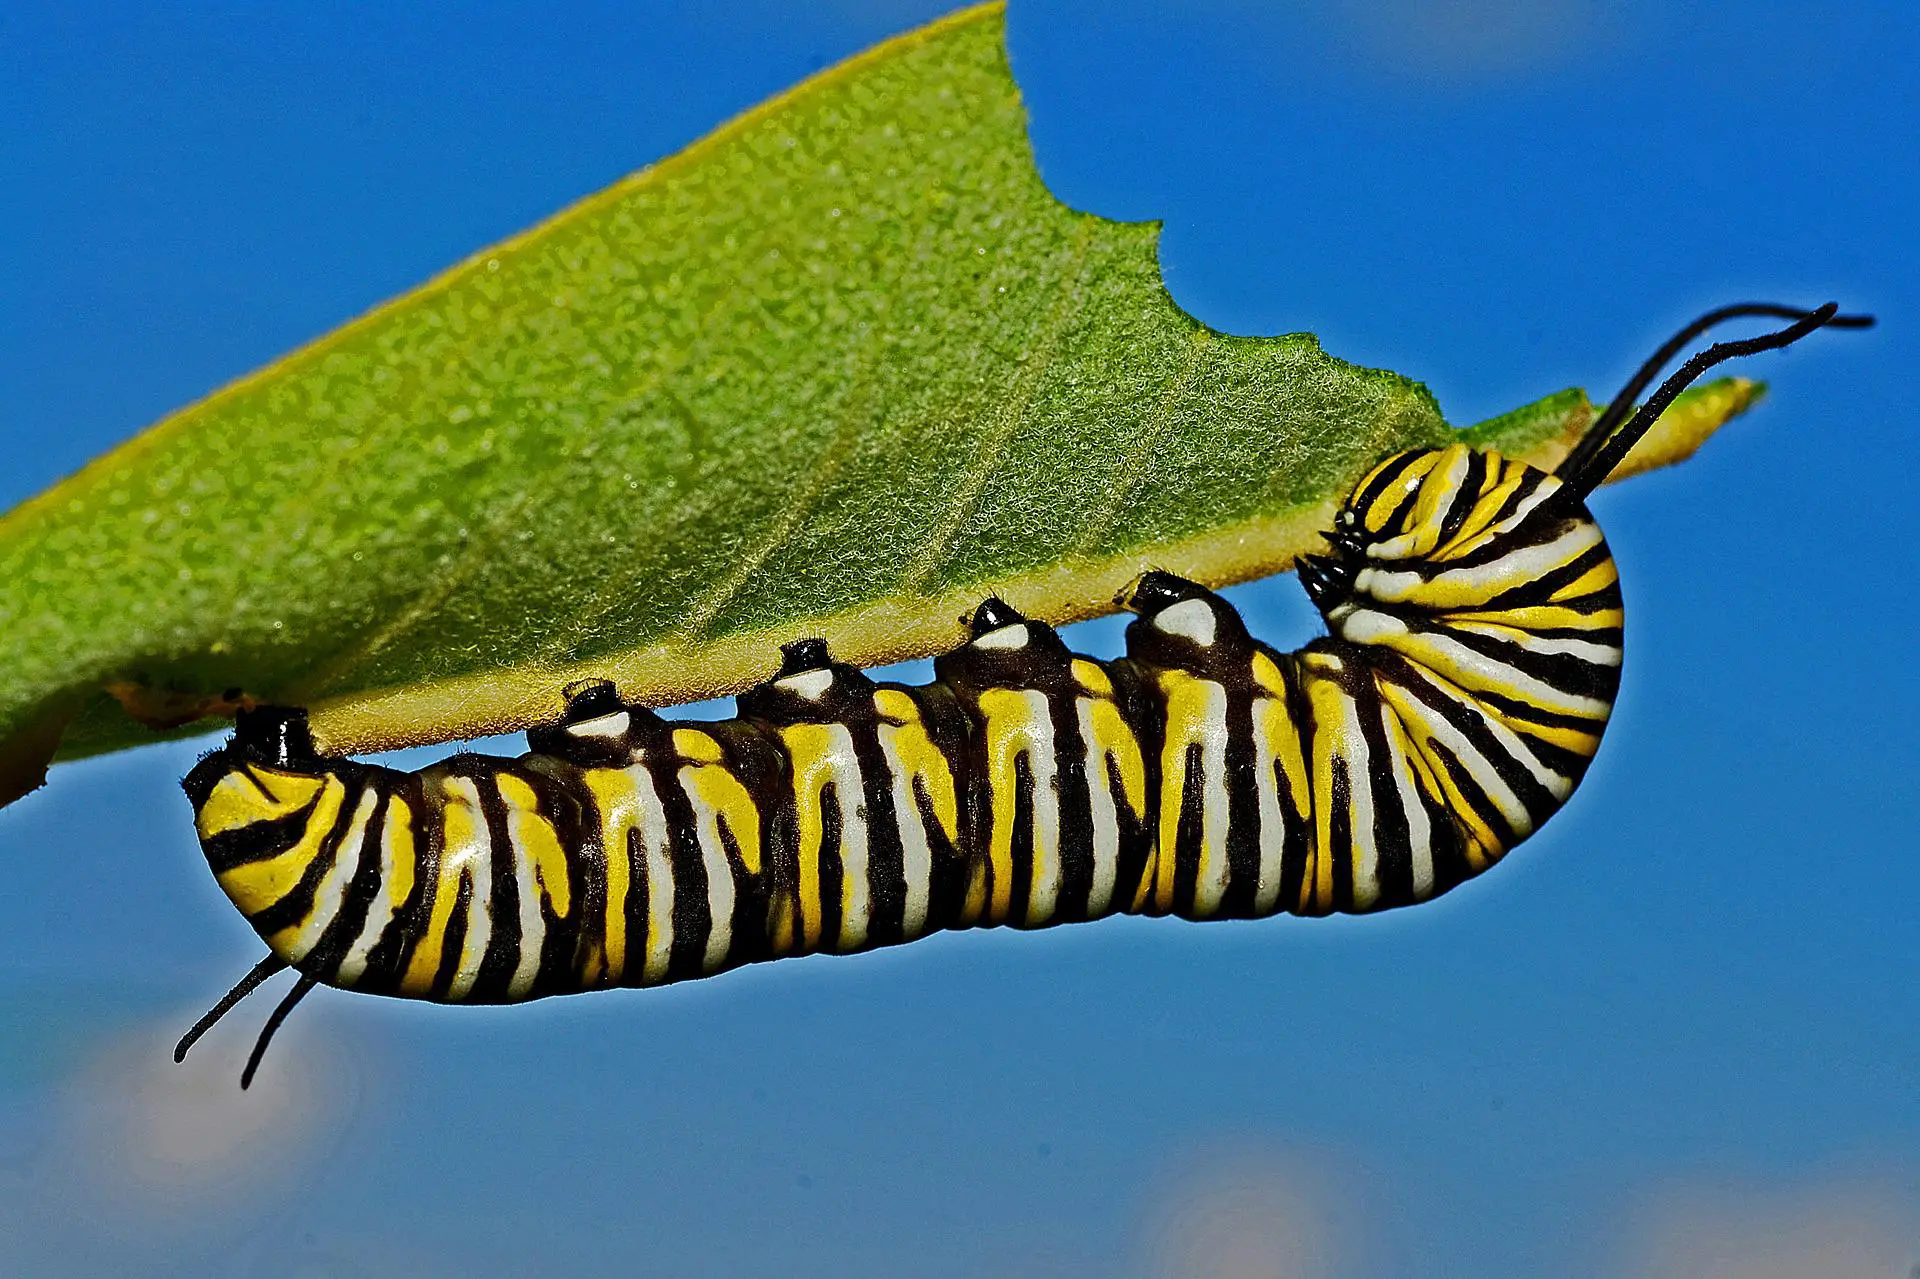  9 ការបកស្រាយសុបិន្ត Caterpillar